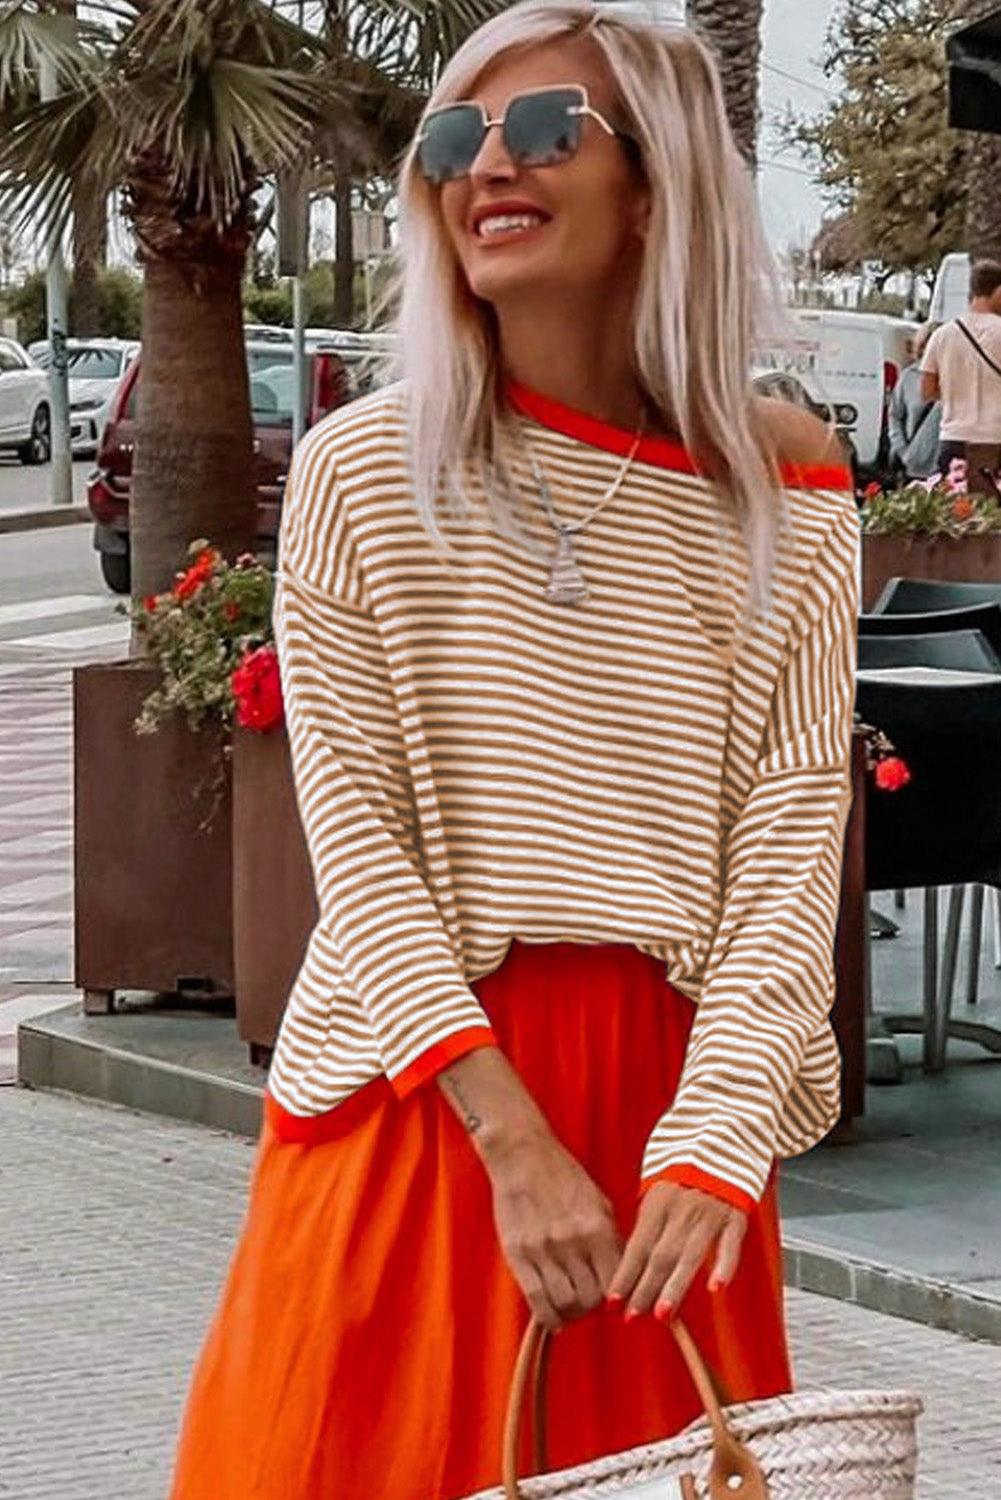 Striped Colorblock Trim Knit Pullover Sweater - Vesteeto